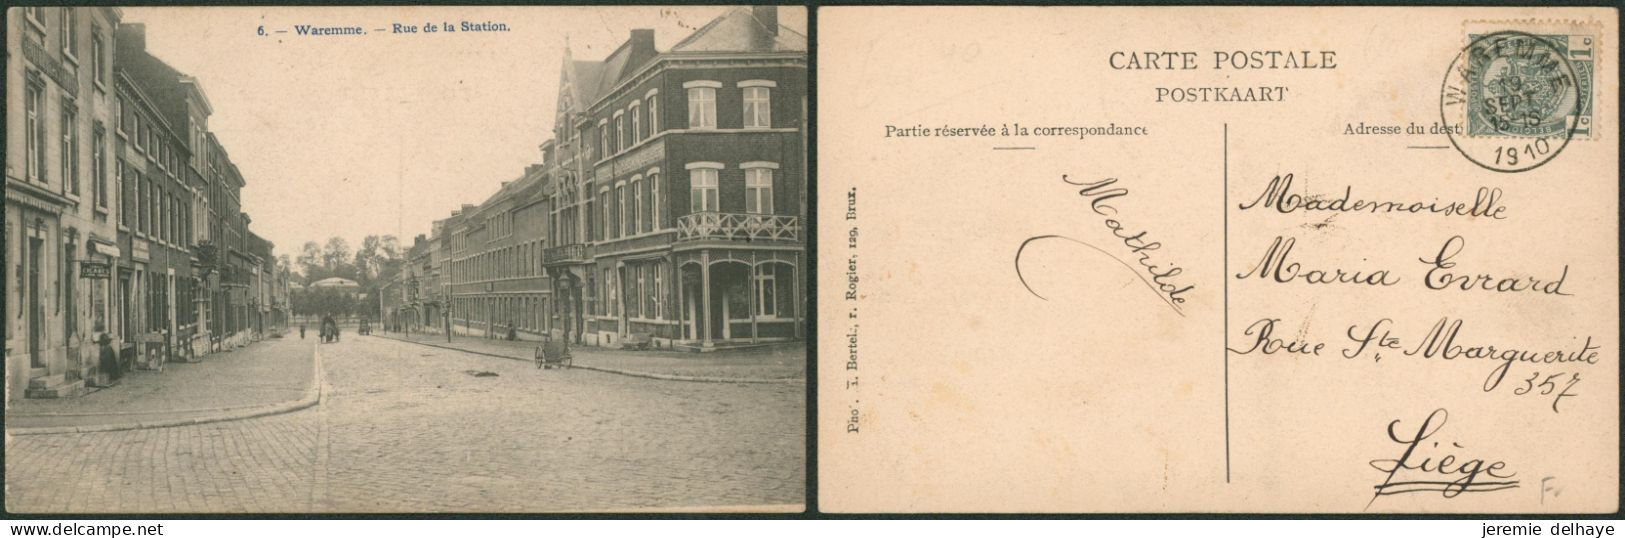 Carte Postale - Waremme : Rue De La Station (n°6, H. Bertels) - Waremme